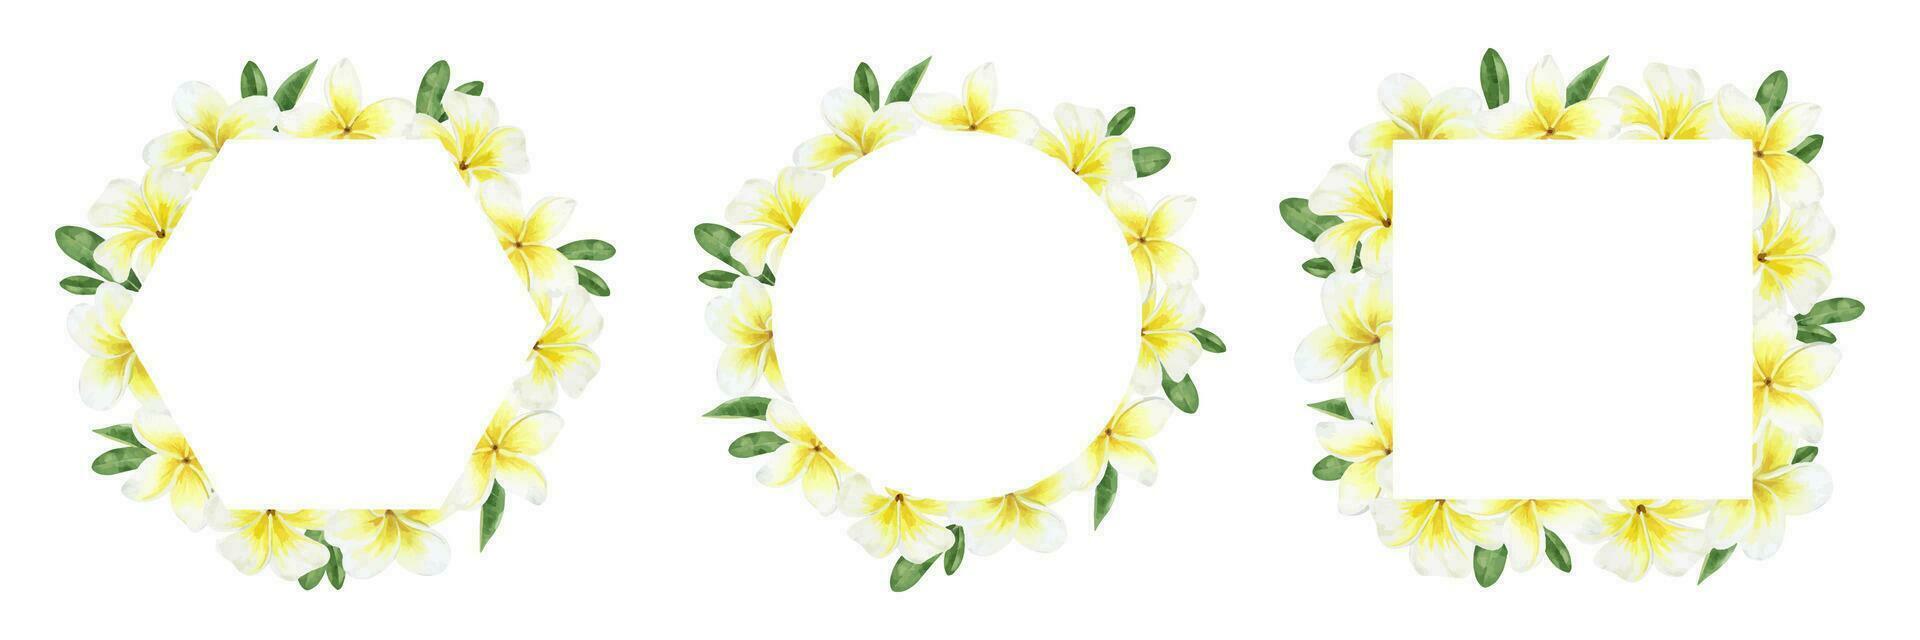 uppsättning av ramar med gul plumeria blommor. tropisk exotisk blommor. vattenfärg illustrationer för hälsning kort, vykort, scrapbooking, förpackning design vektor